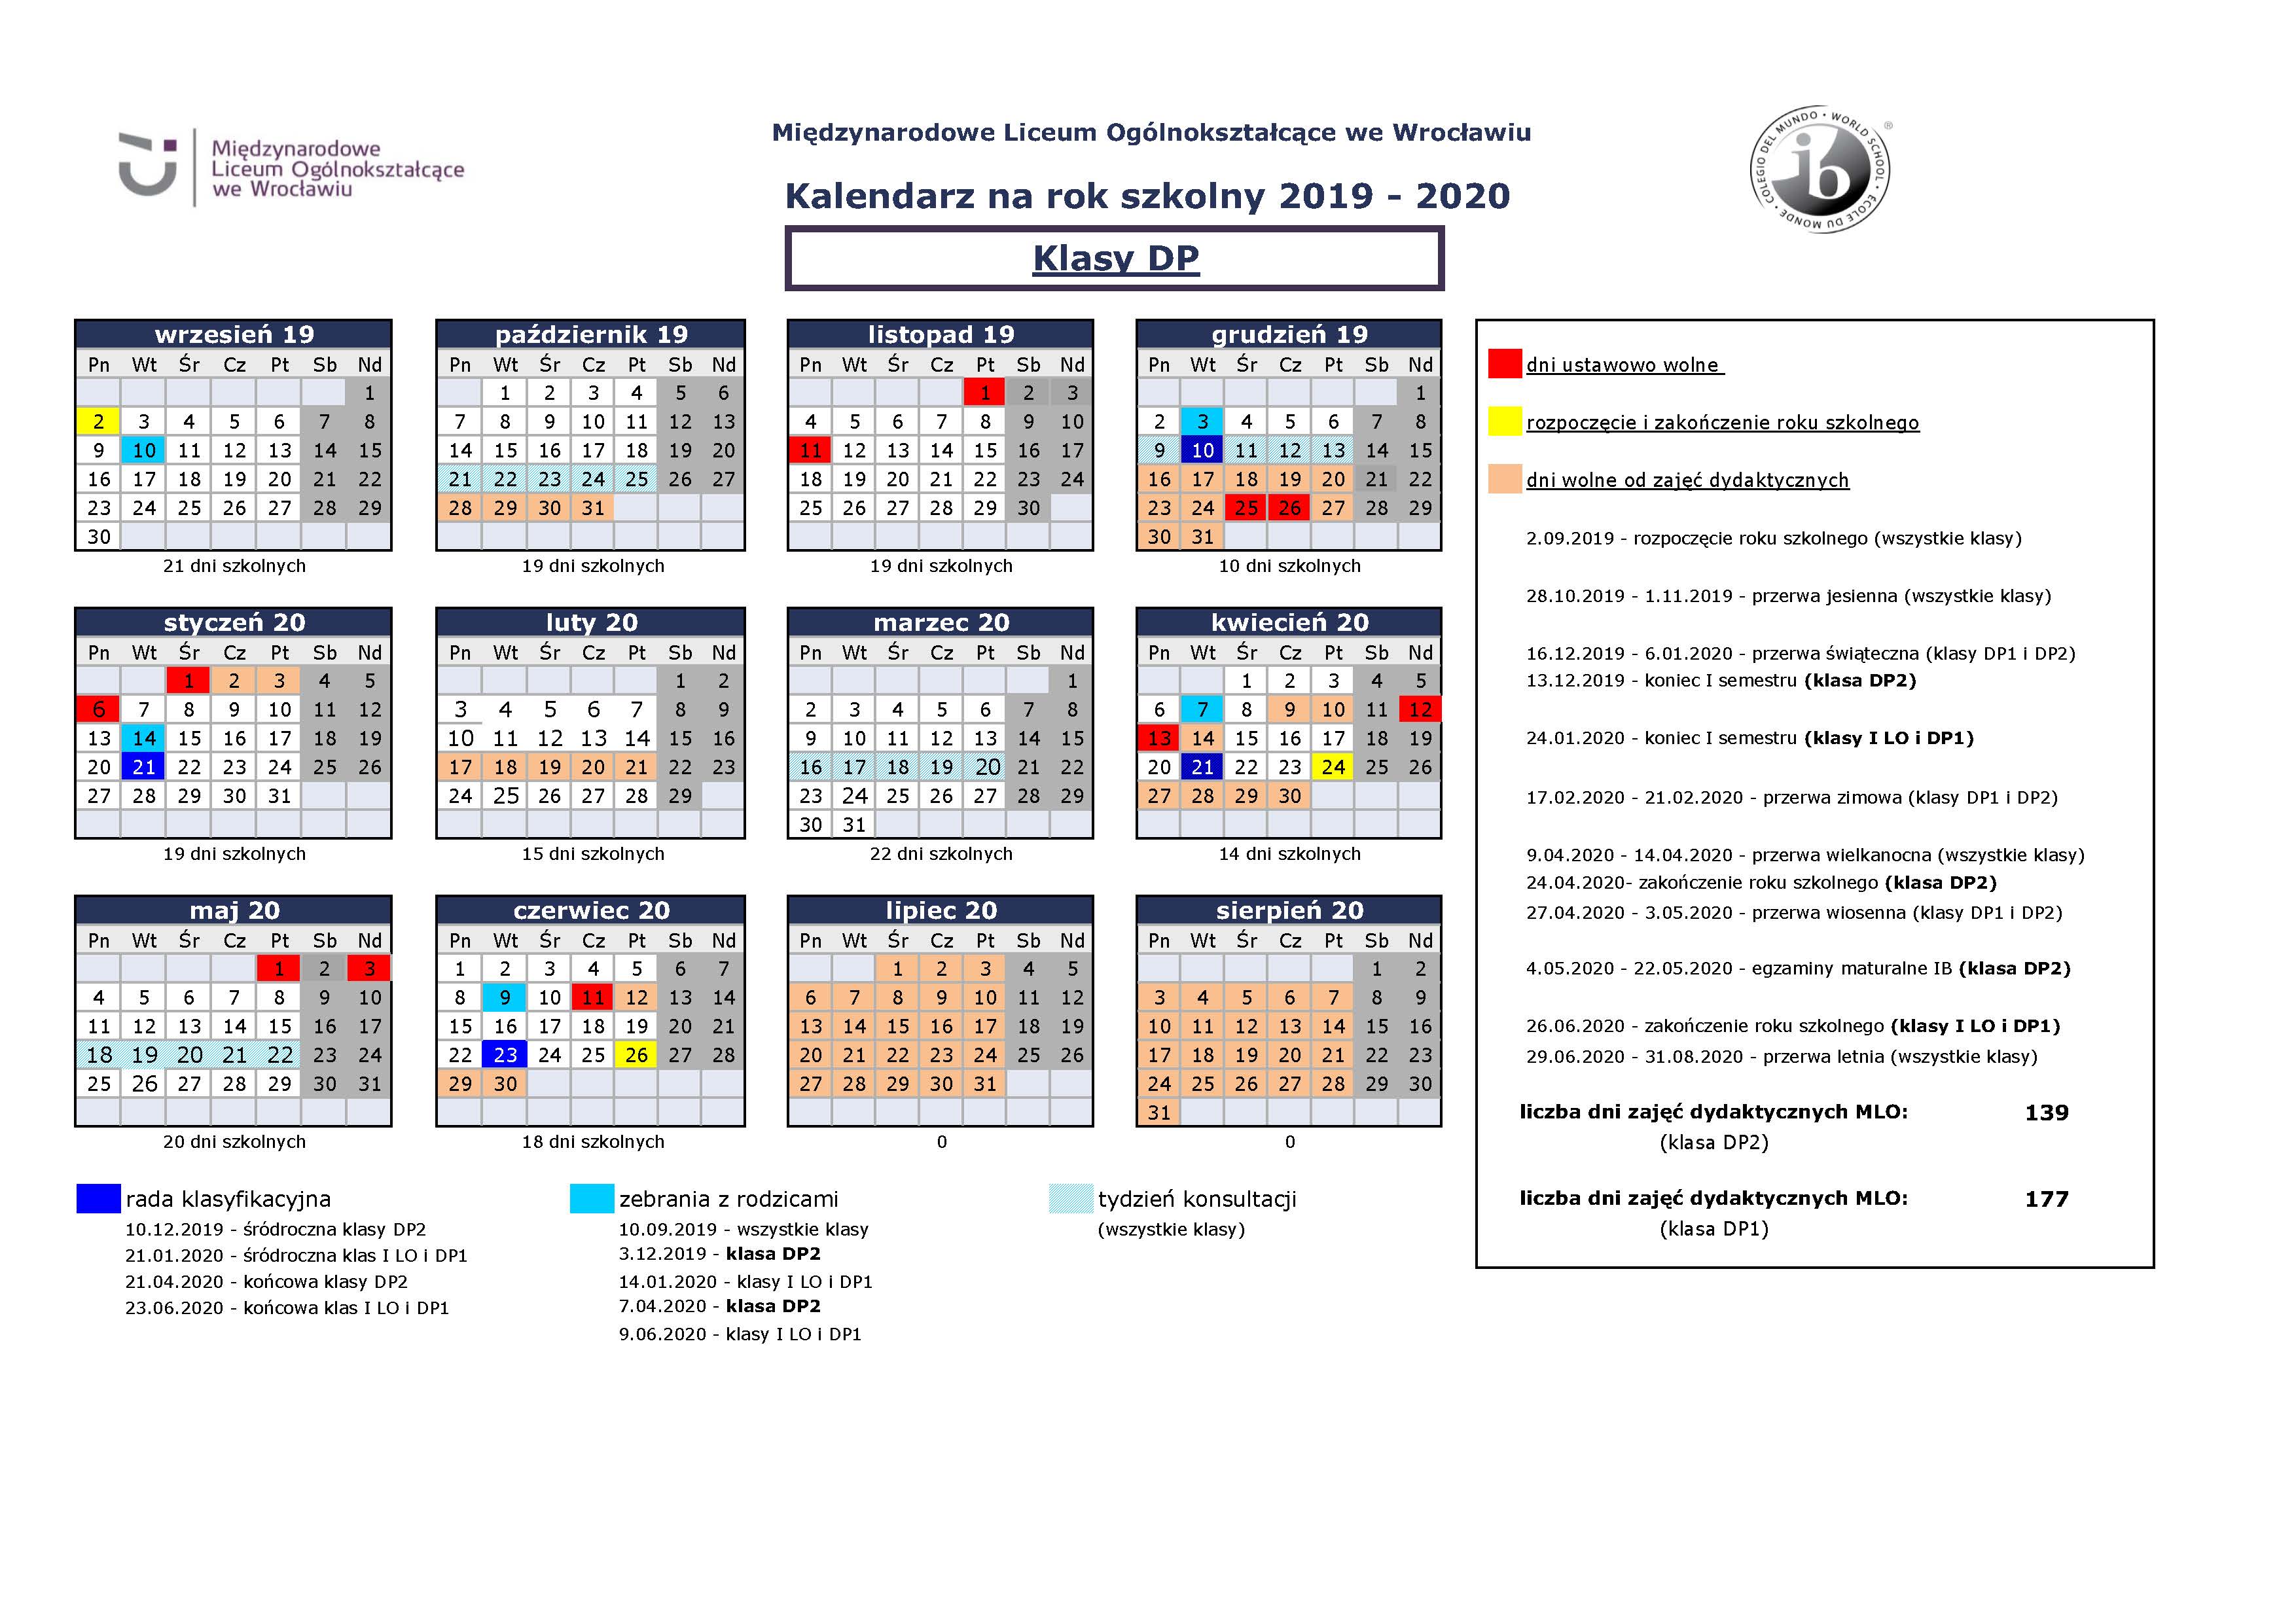 Kalendarz MLO 2019-2020 dla rodziców klas DP